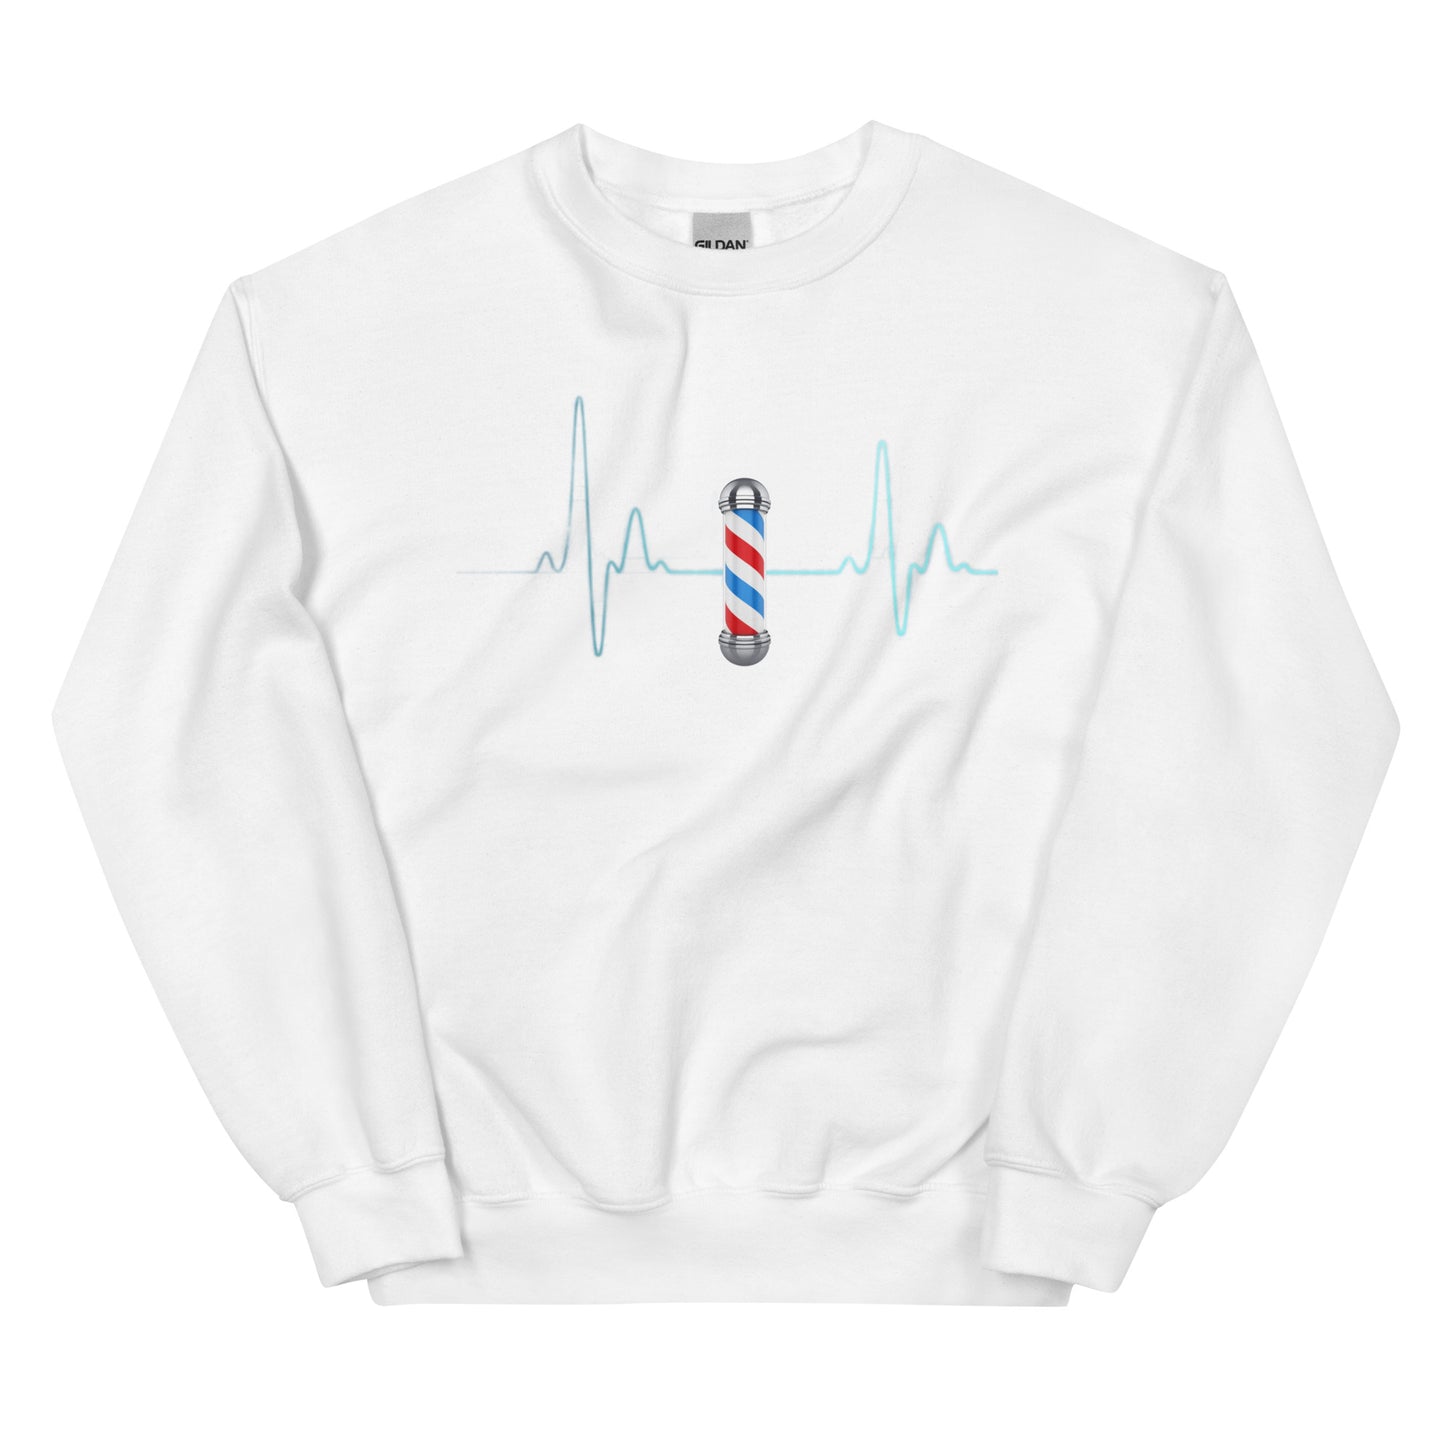 Barber Heartbeat— Sweatshirt